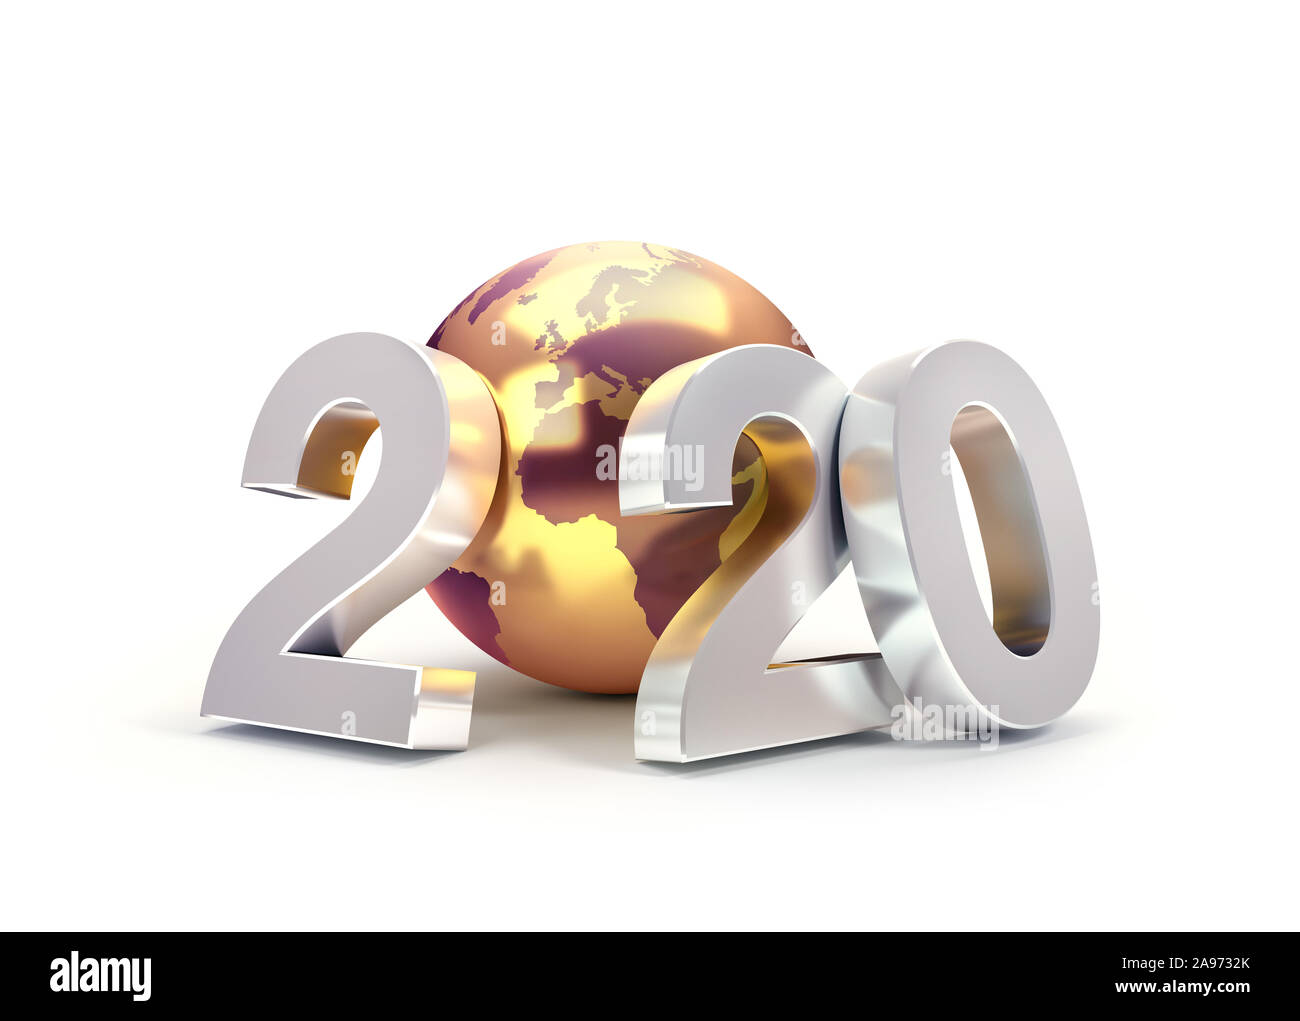 2020 Neues Jahr Datum Anzahl besteht aus einem goldenen Planeten Erde, über Europa und Afrika, auf Weiß - 3D Illustration isoliert konzentriert Stockfoto